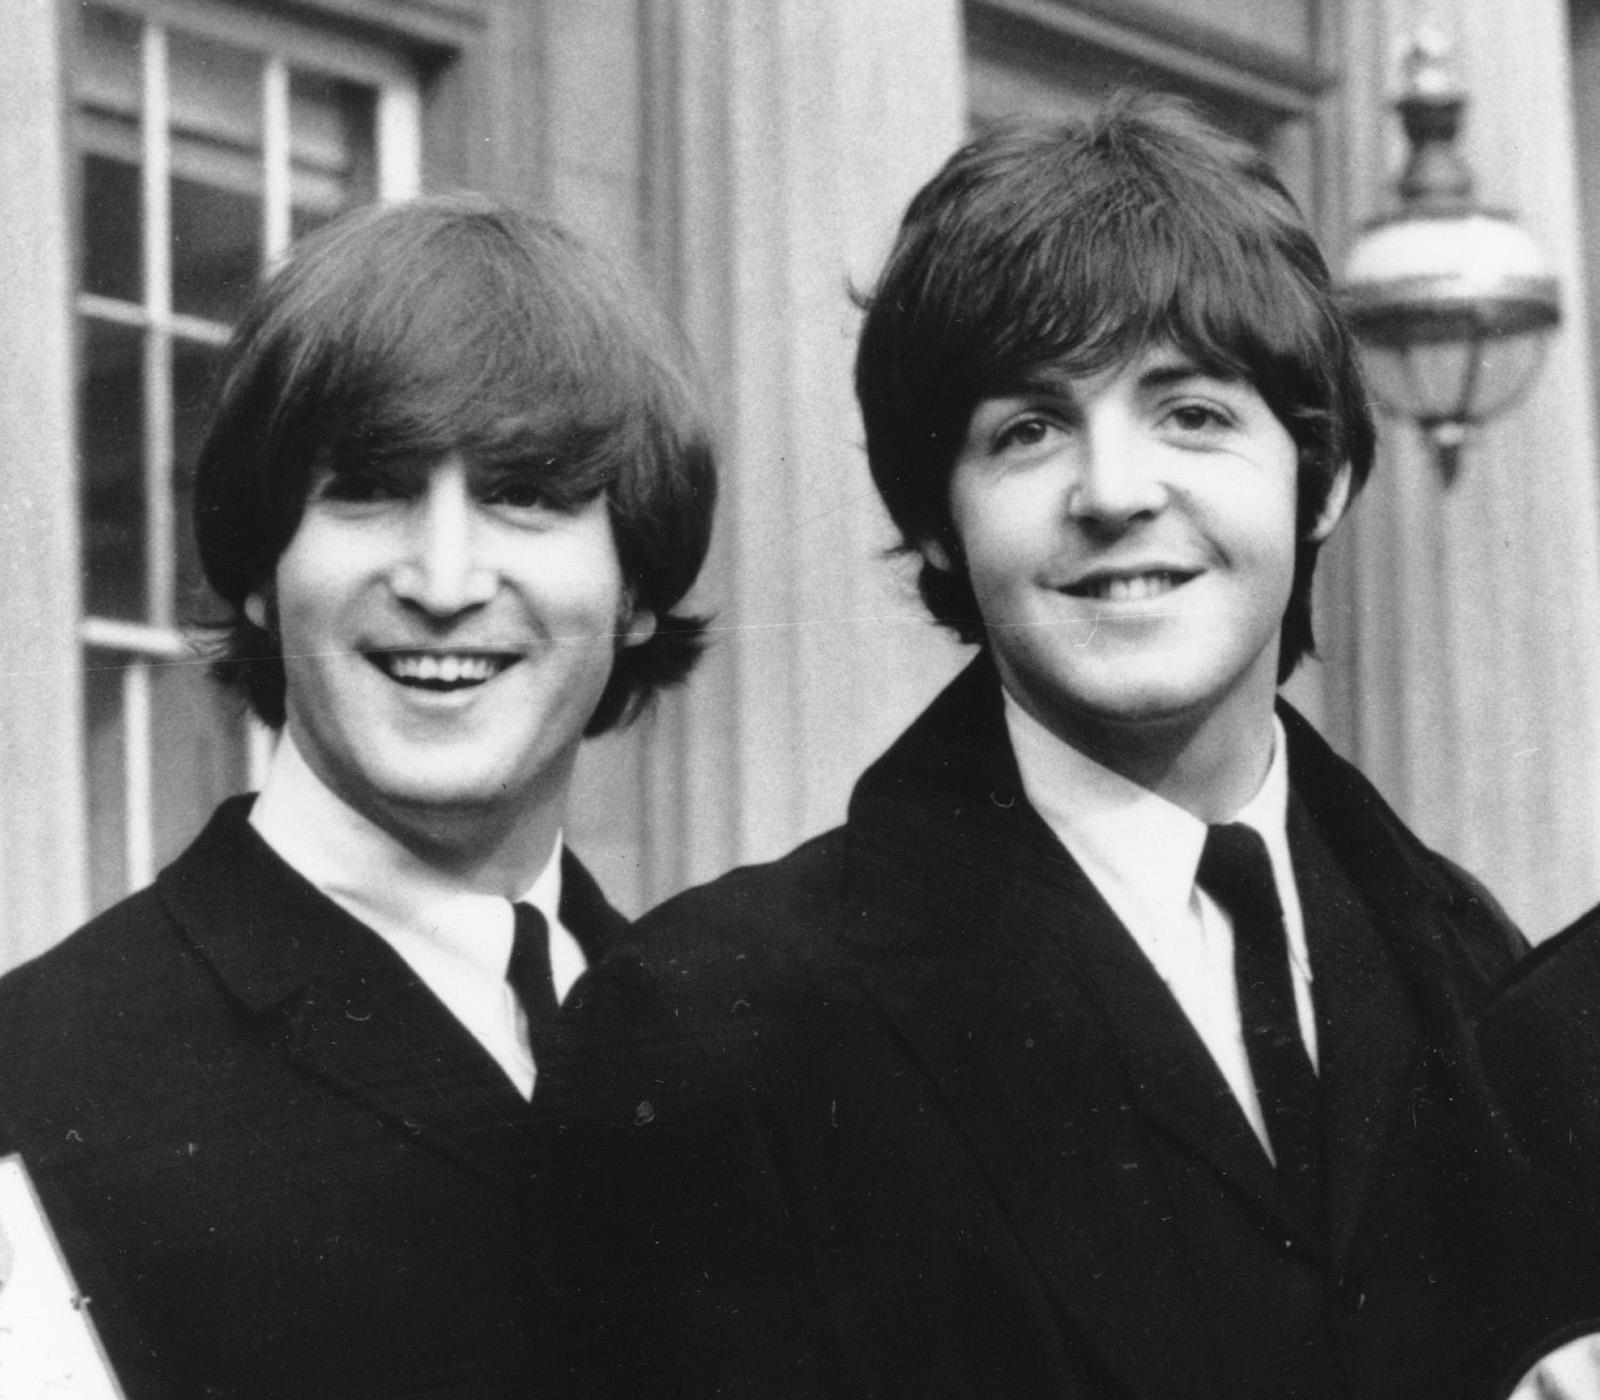 John Lennon och Paul McCartney.